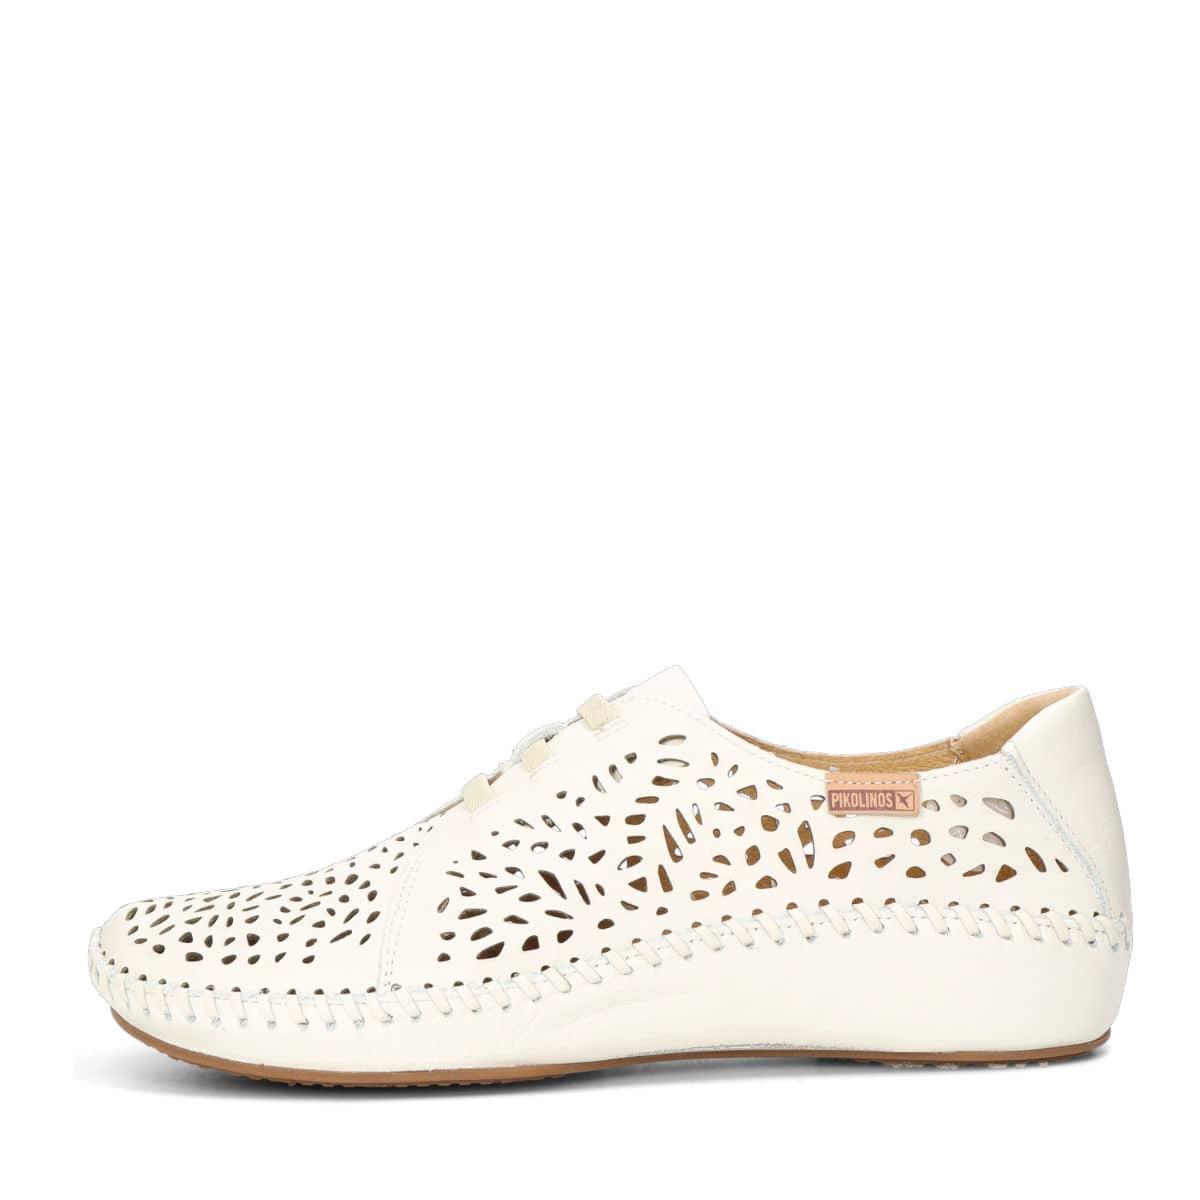 no pagado amortiguar Me preparé Pikolinos women's leather low shoes - beige/white | Robel.shoes